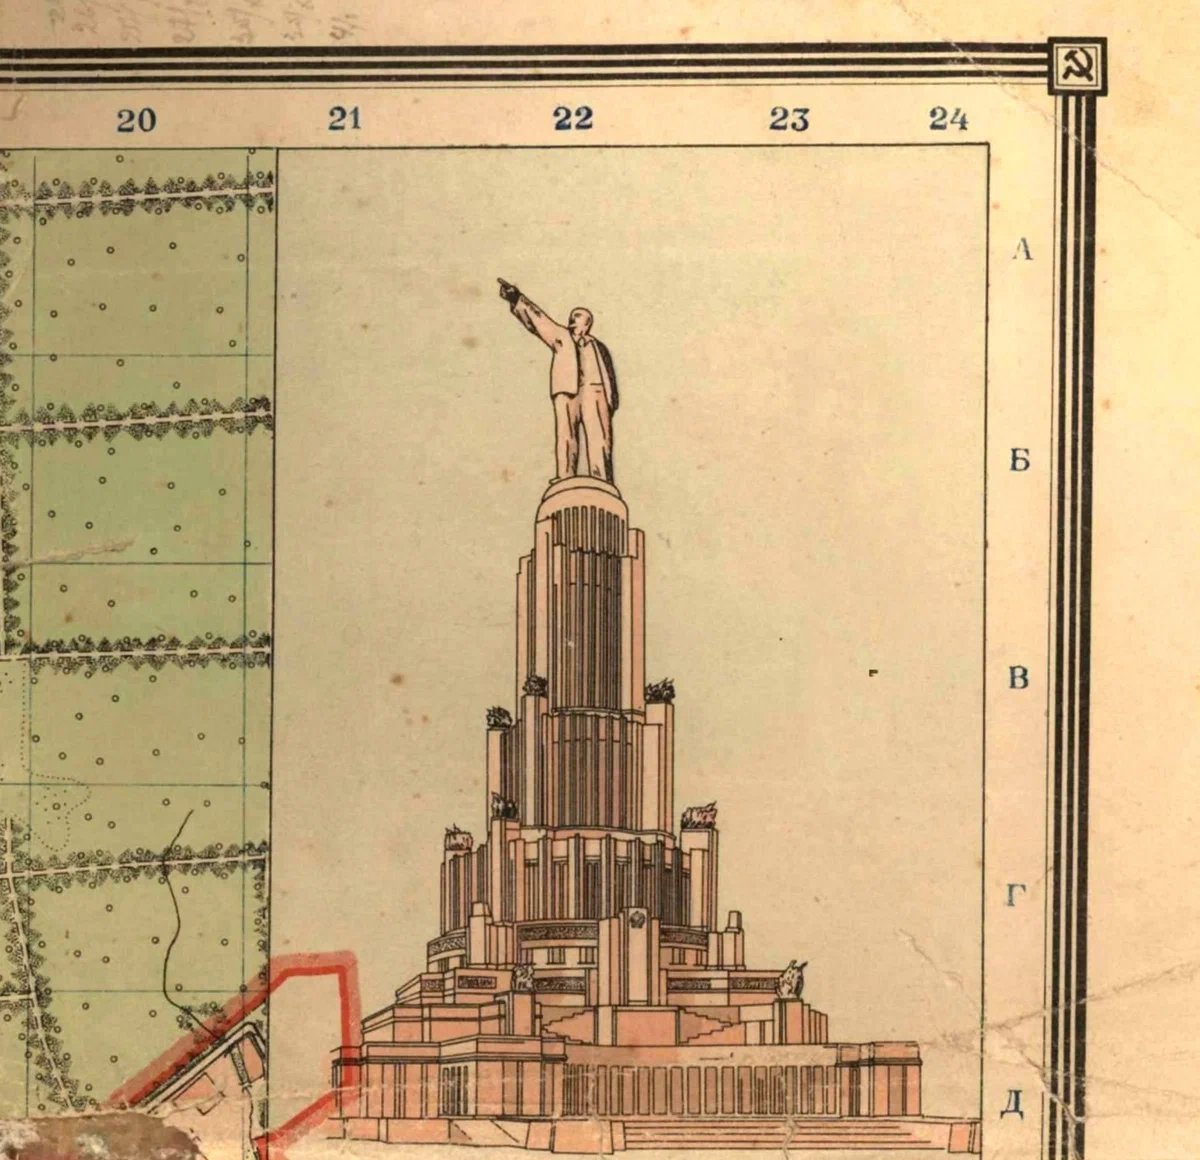 Дворец Советов на "Плане города Москвы" 1940-го года, проект составлен и издан Геодезической конторой Управления планировки г. Москвы.